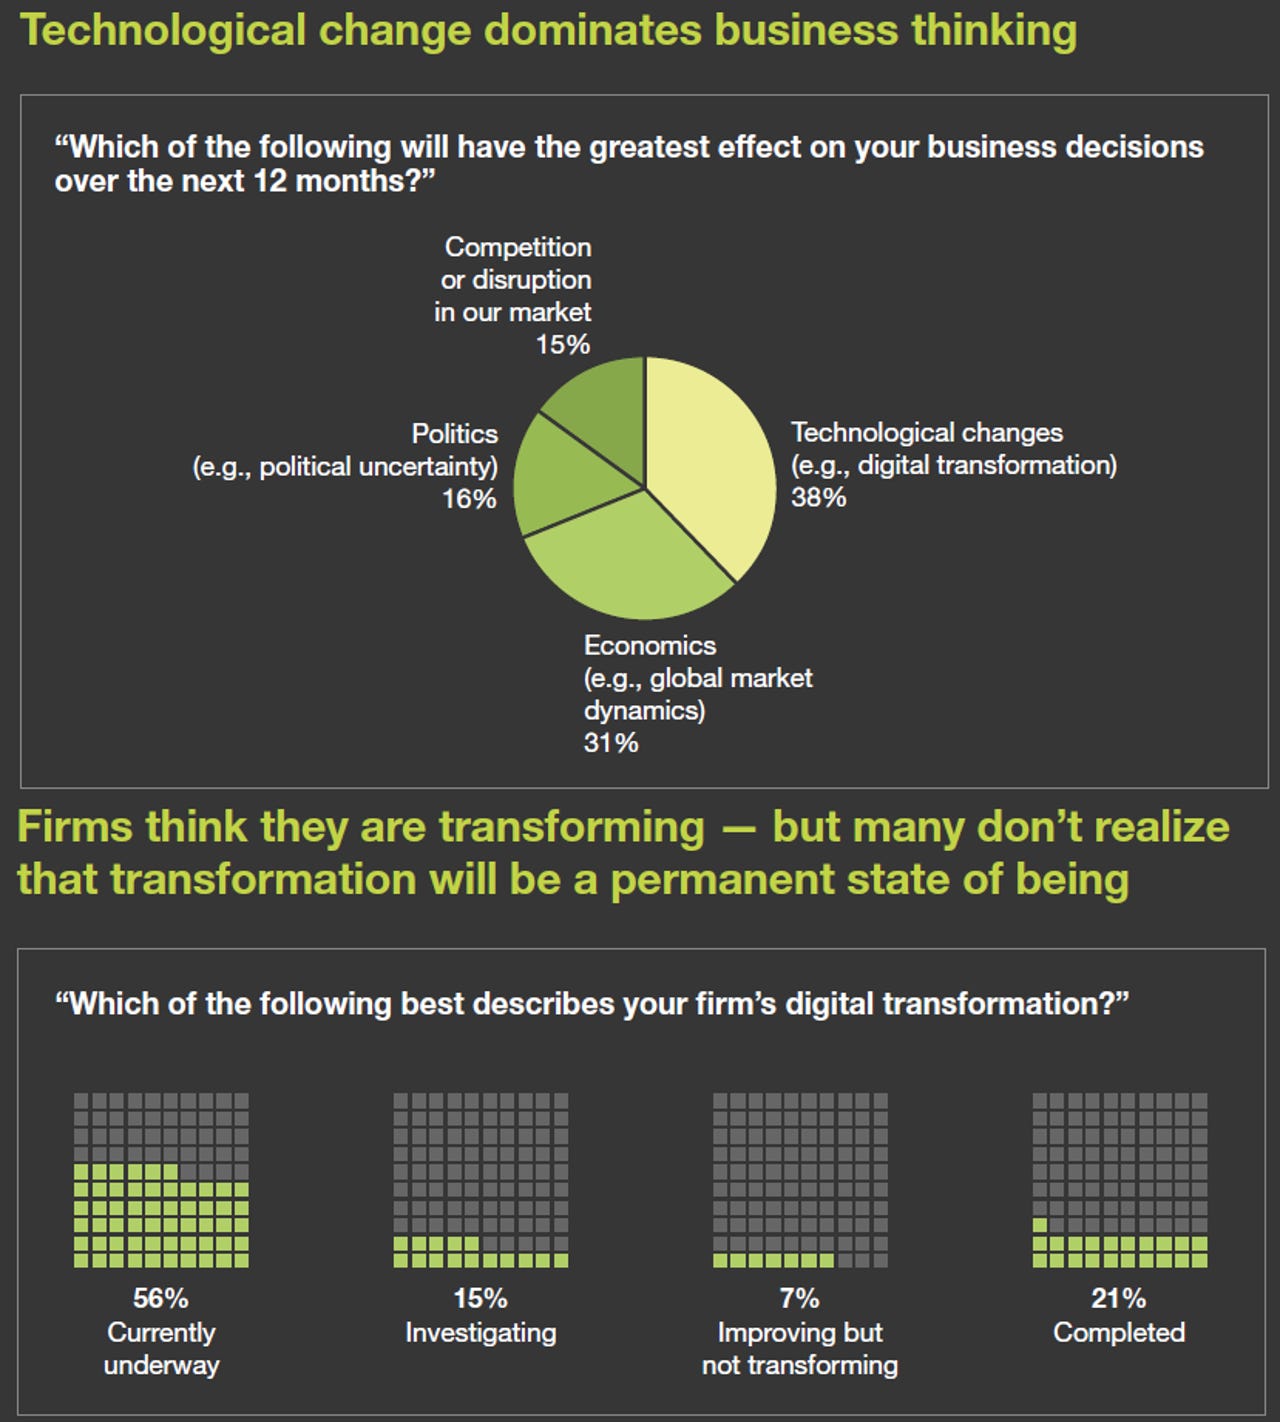 forrester-digital-transformation-survey.png